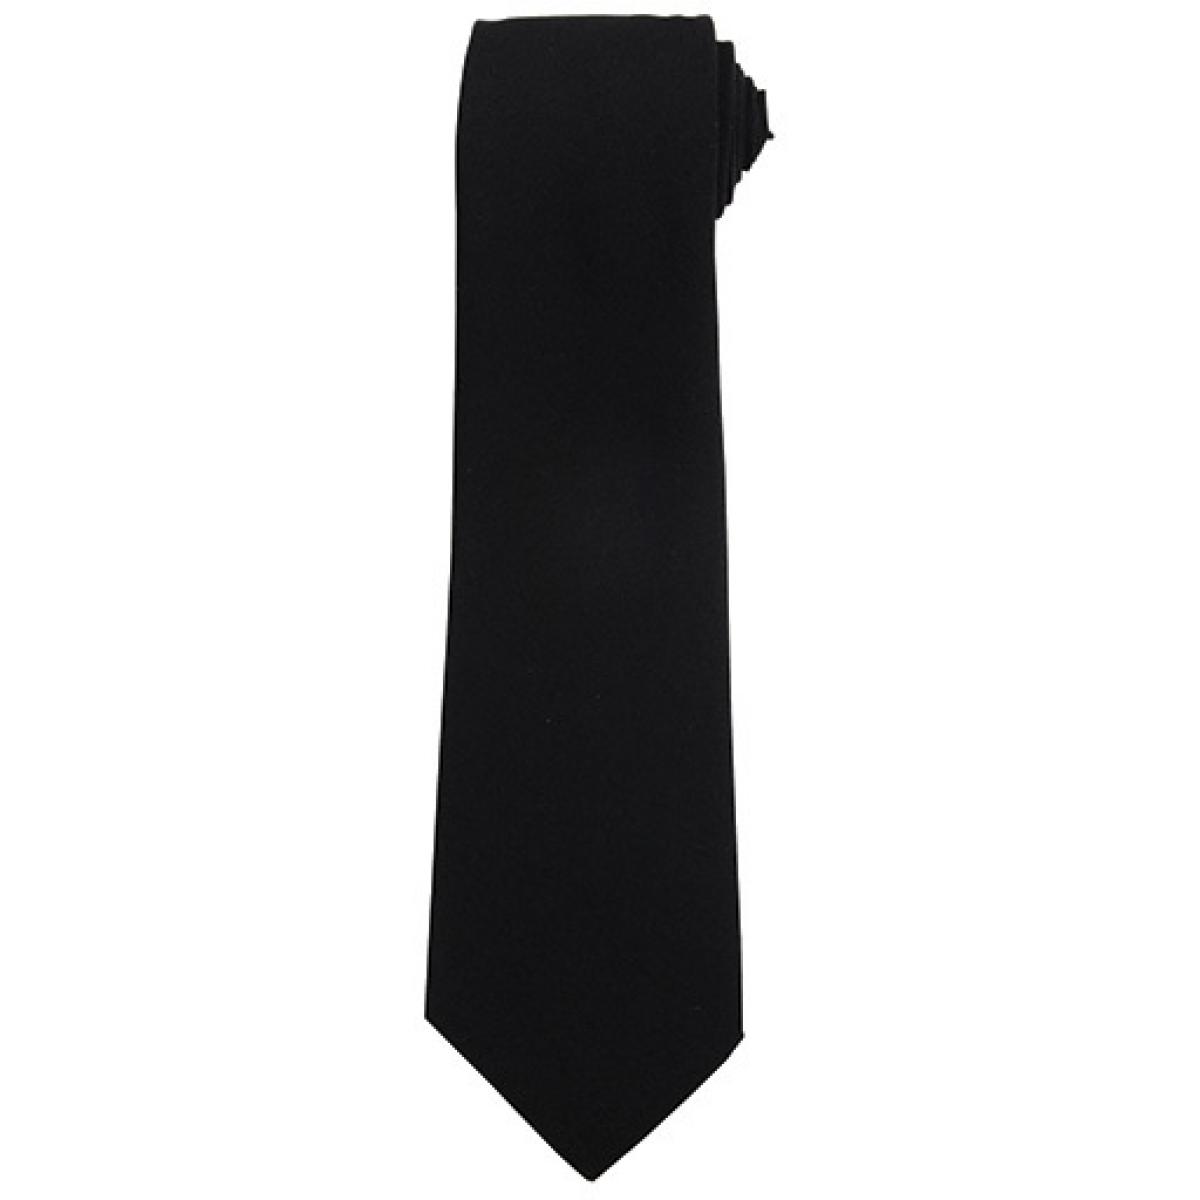 Hersteller: Premier Workwear Herstellernummer: PR700 Artikelbezeichnung: Work Tie Farbe: Black